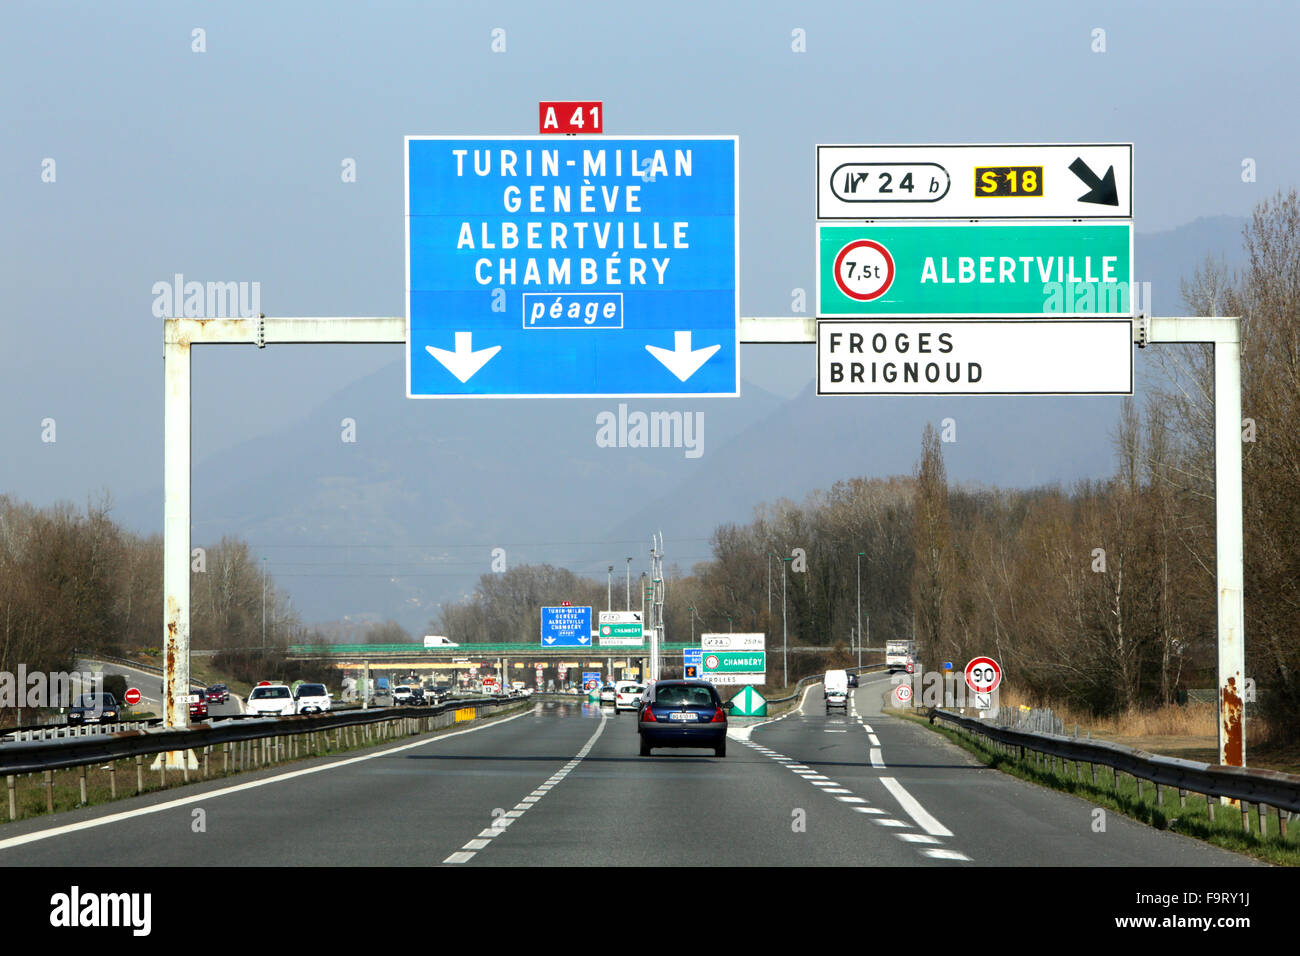 Autoroute A41. Turin-Milan, Geneva, Albertville, Chambery. Toll. Stock Photo